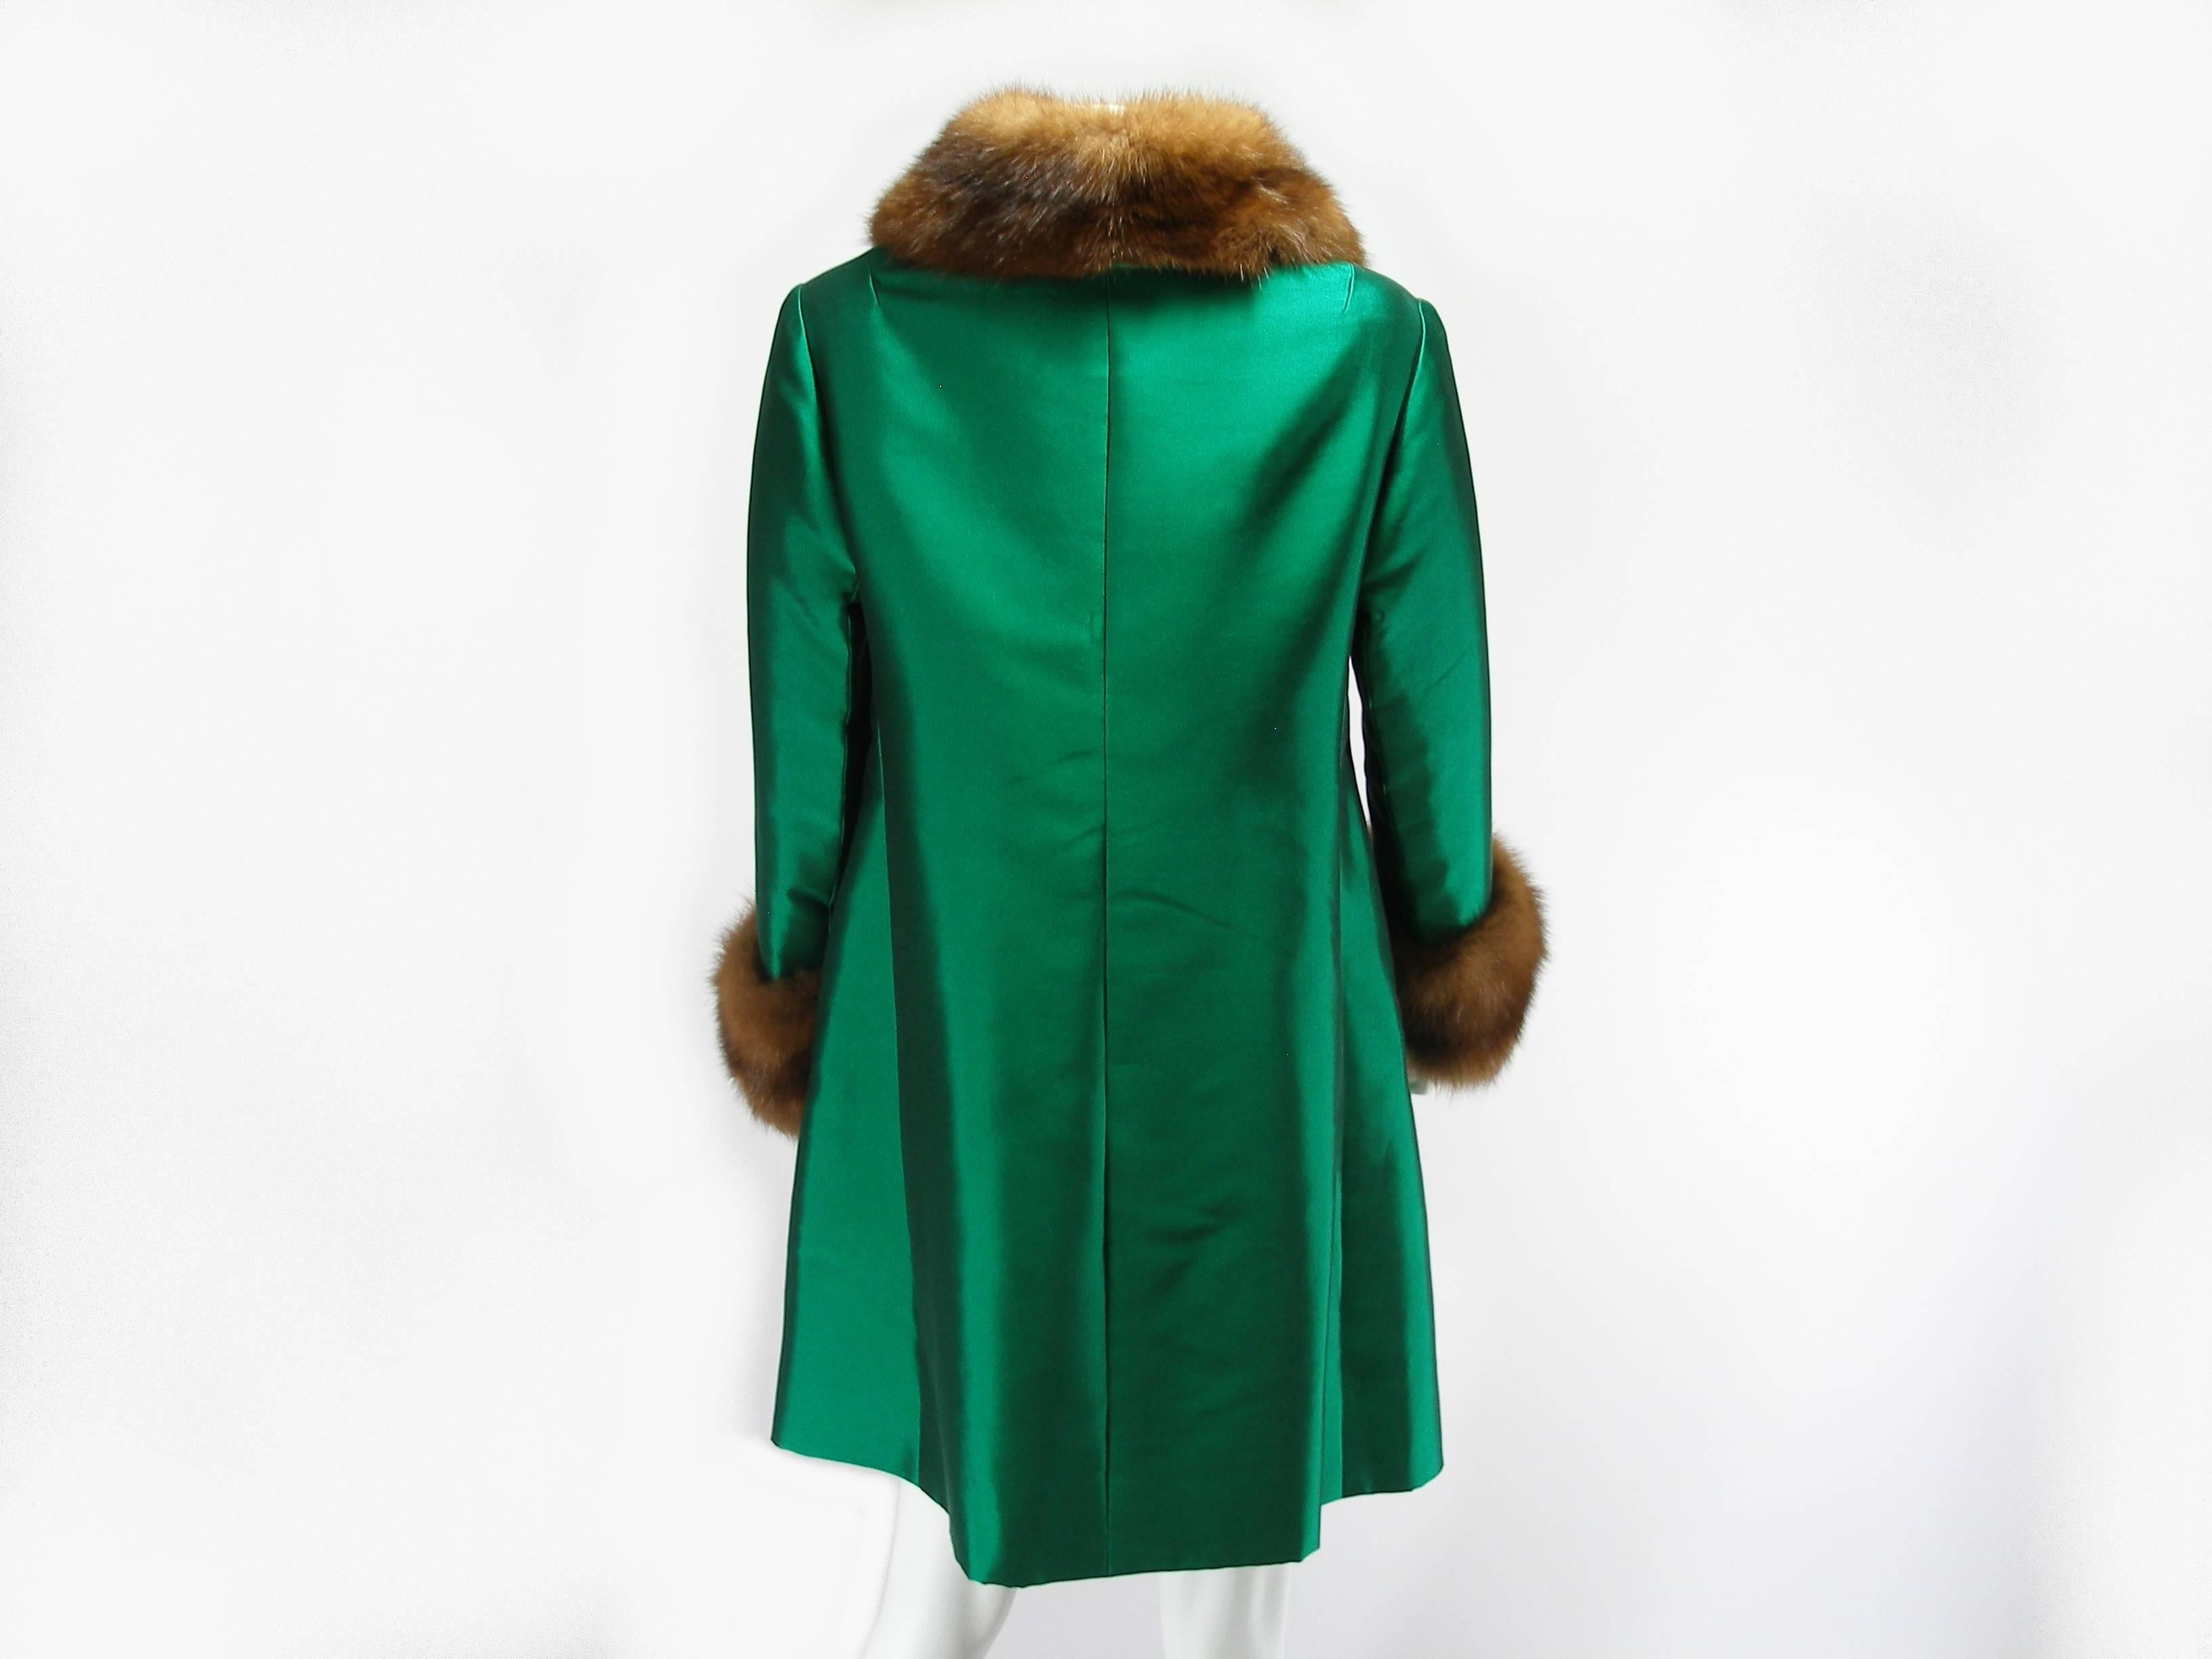 FANTASTIC Vintage coat Christian Dior 
Green Silk and Mink Fur
Pièce numéro : 654521
Total length: 85 cm or 33.46"
Shoulder width: 40 cm or 15.74"
Chest circumference: 99 cm or  38.97"
Sleeve length: 53 cm or 20.86"
Size estimed